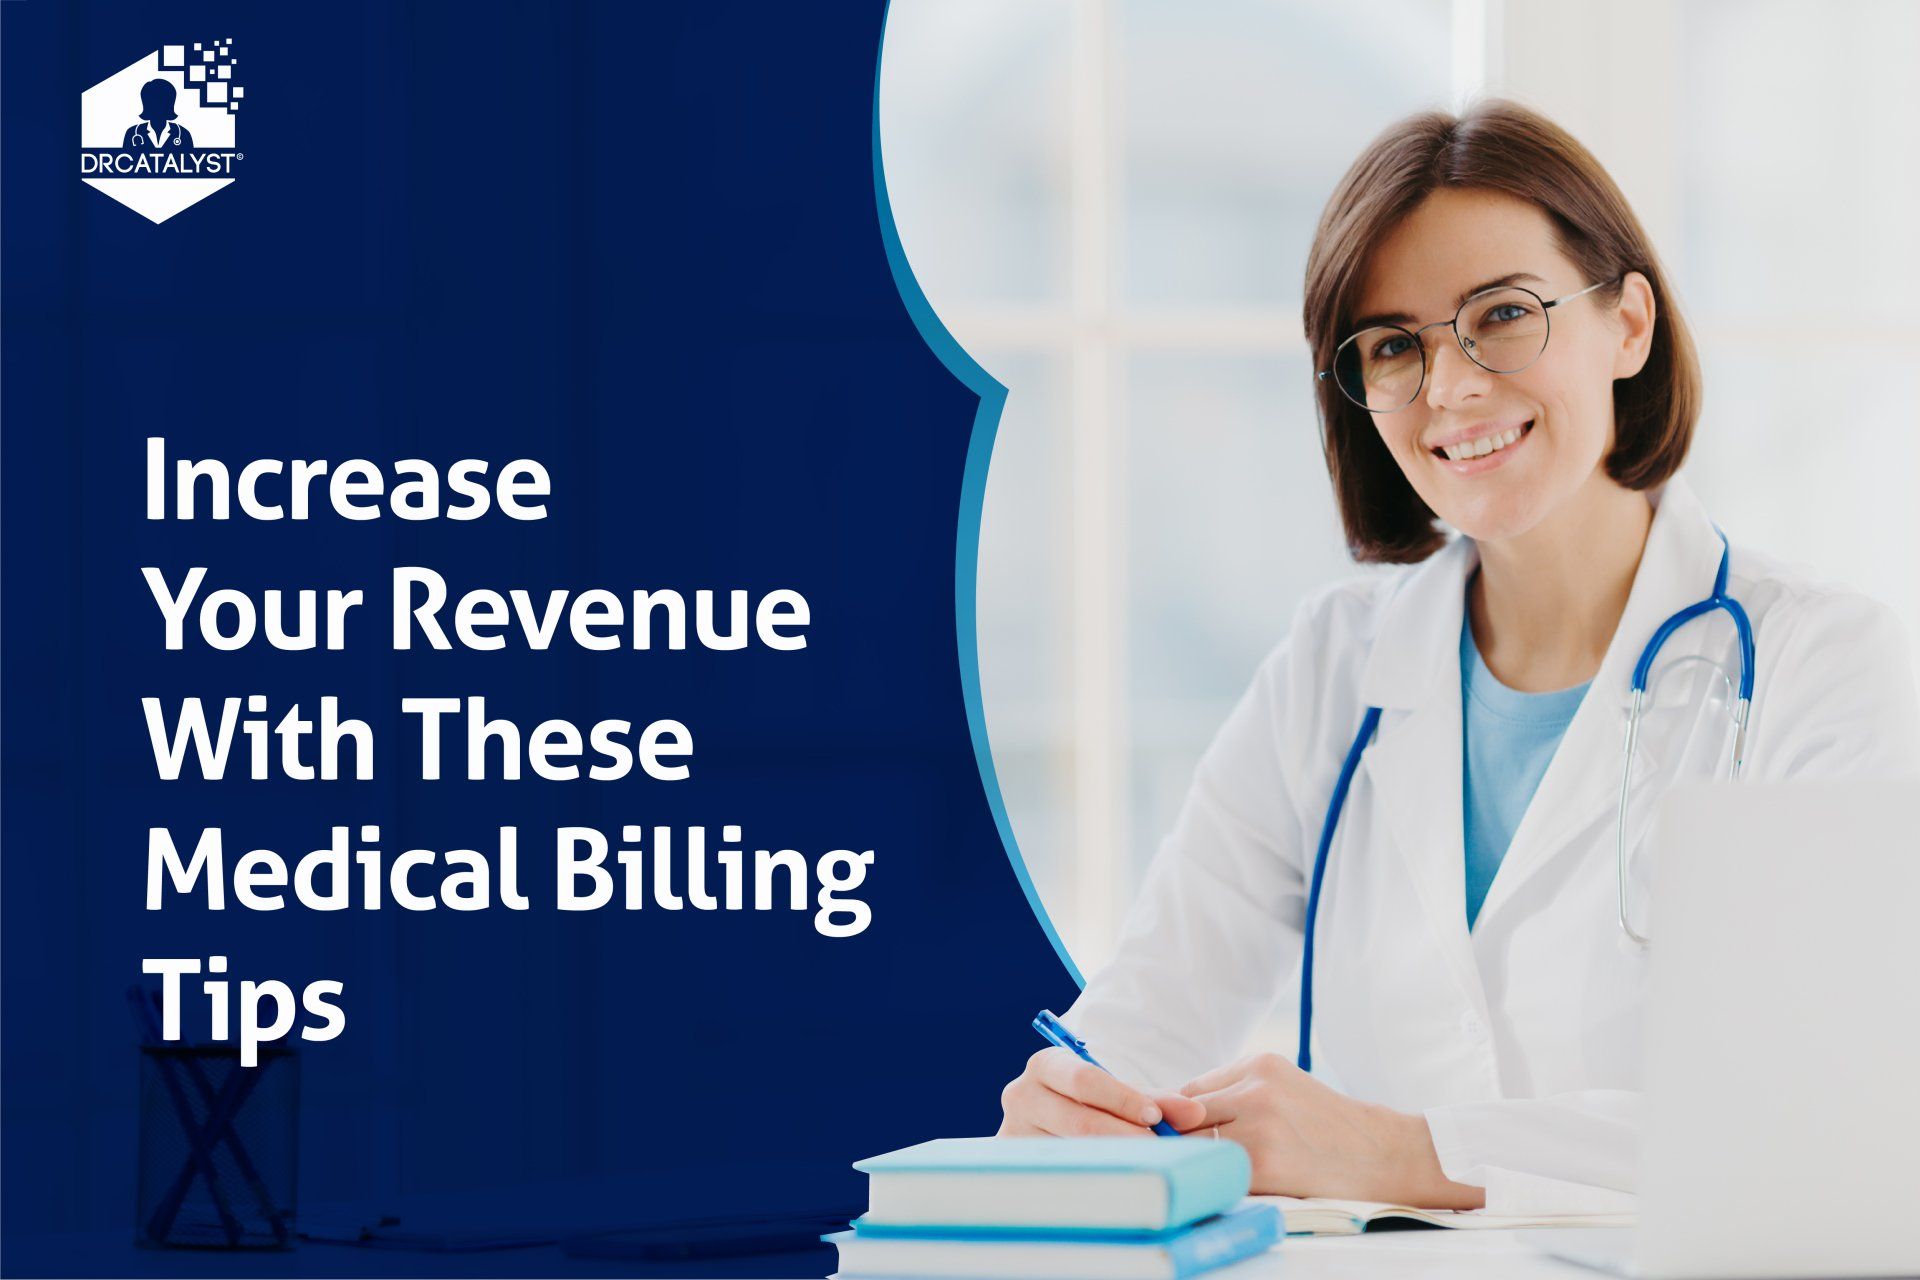 Medical Billing Tips